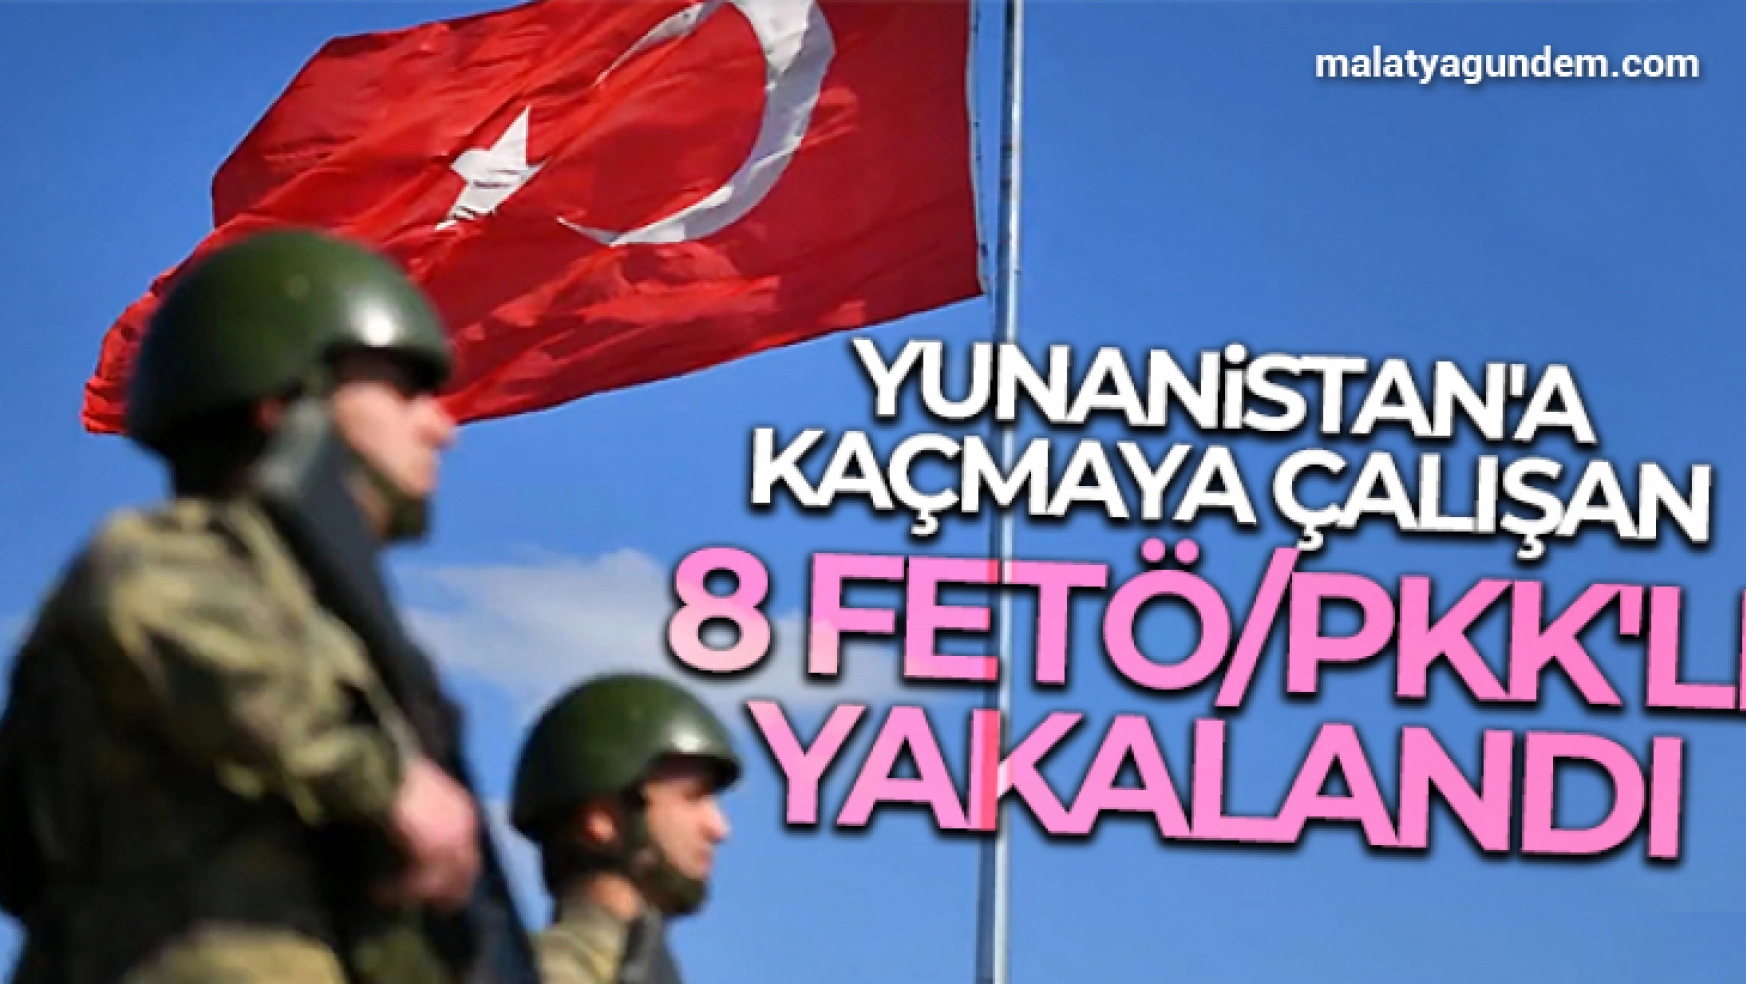 Yunanistan'a kaçmaya çalışan 8 FETÖ/PKK'lı yakalandı